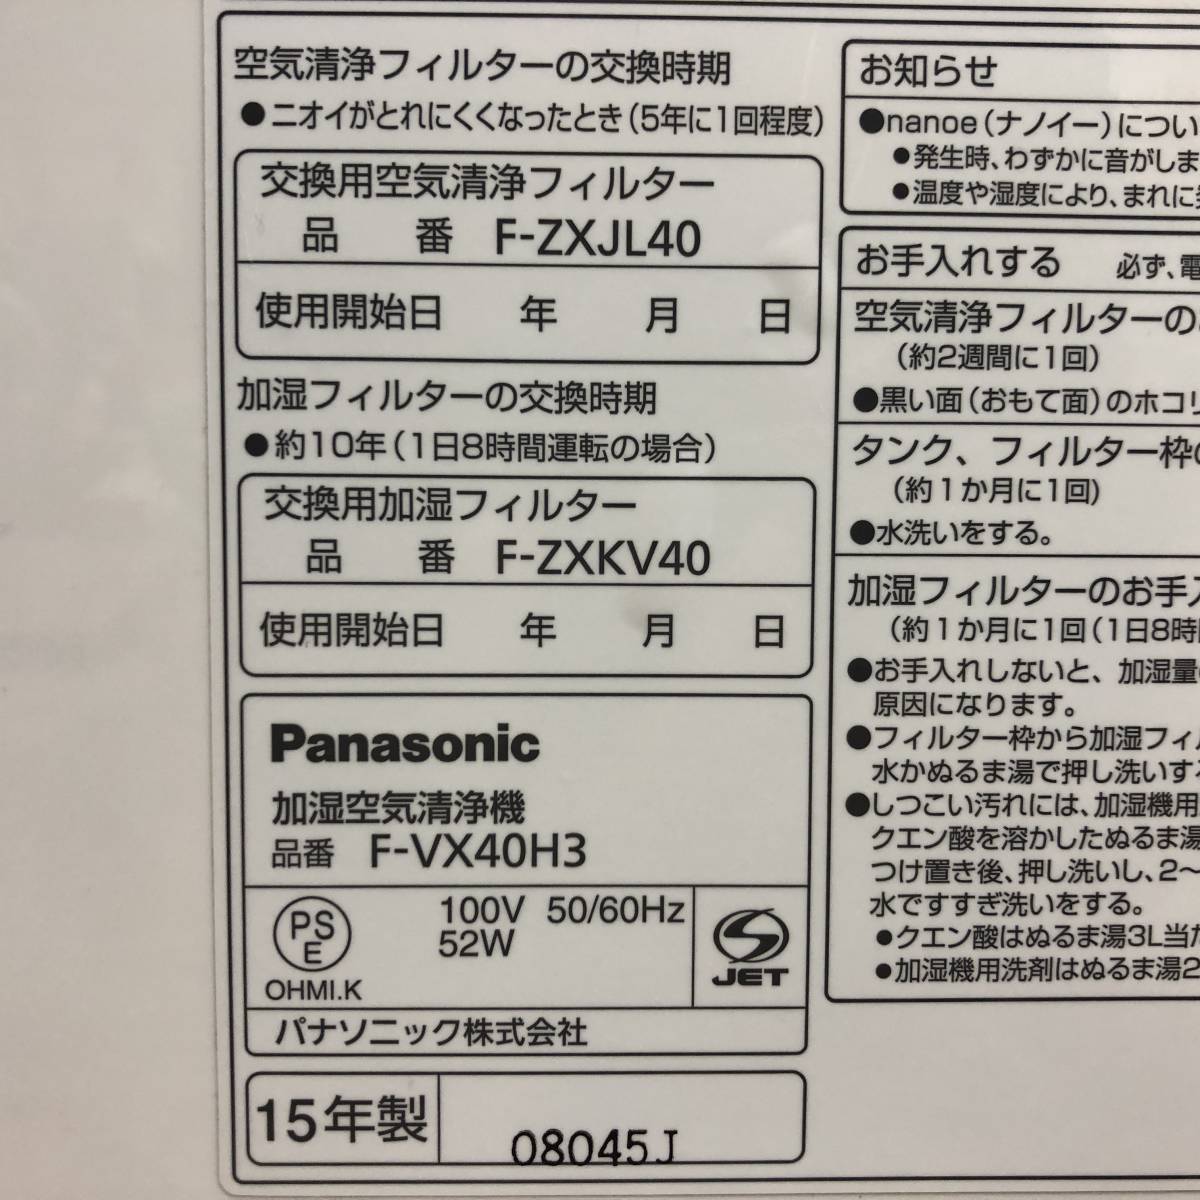 動作品 Panasonic パナソニック F-VX40H3 加湿 空気清浄機 nanoe ナノイー ECONAVI エコナビ ホワイト 50/60Hz 100V 札幌の画像10